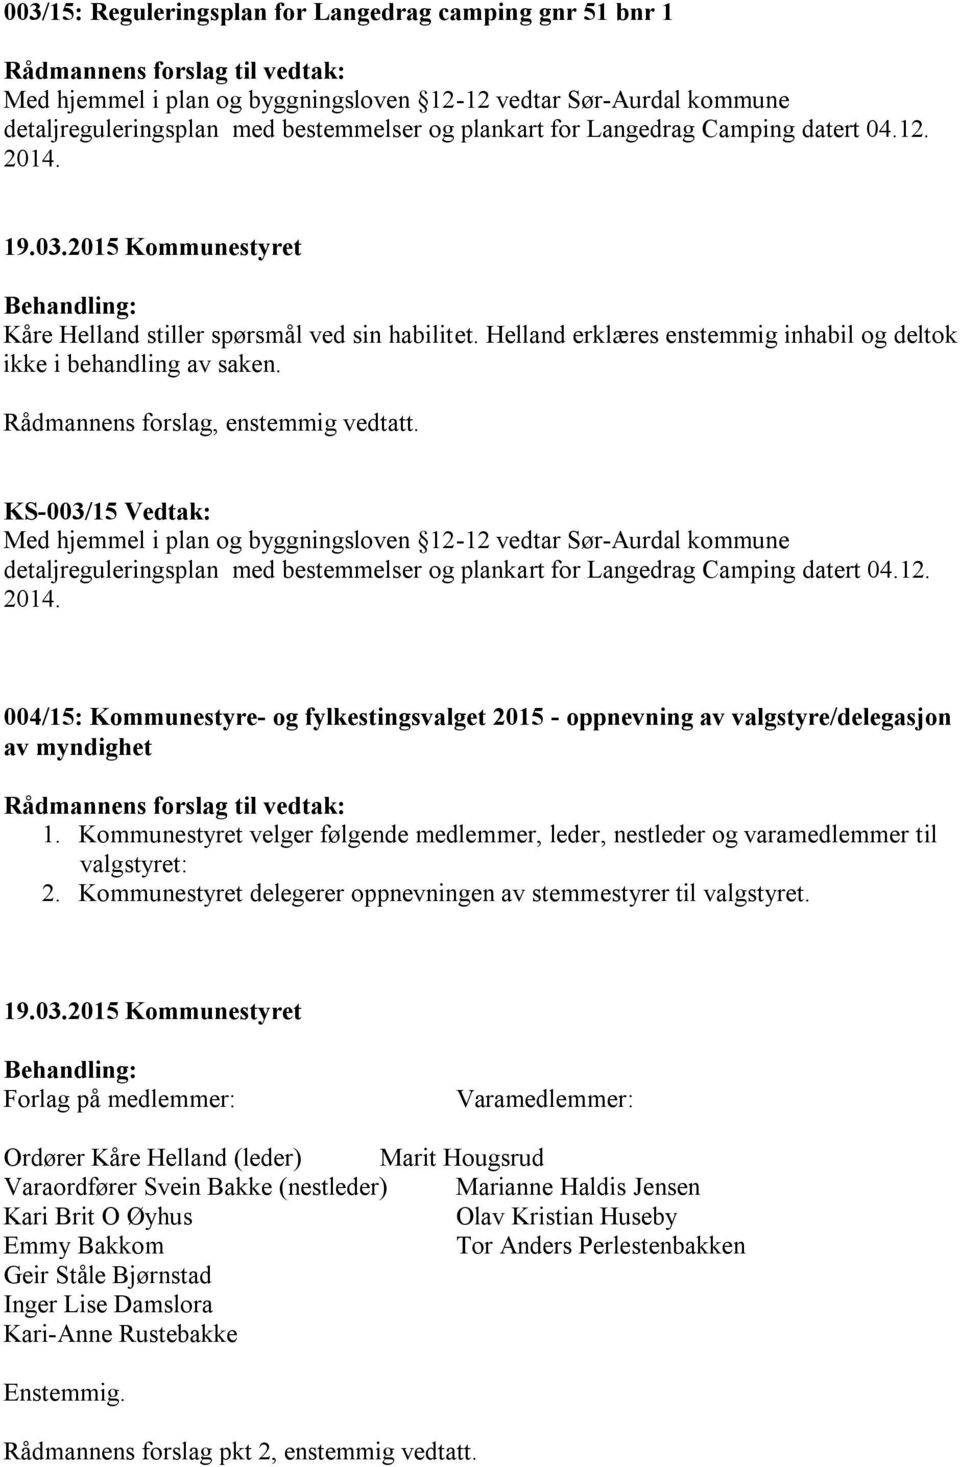 KS-003/15 Vedtak: Med hjemmel i plan og byggningsloven 12-12 vedtar Sør-Aurdal kommune detaljreguleringsplan med bestemmelser og plankart for Langedrag Camping datert 04.12. 2014.